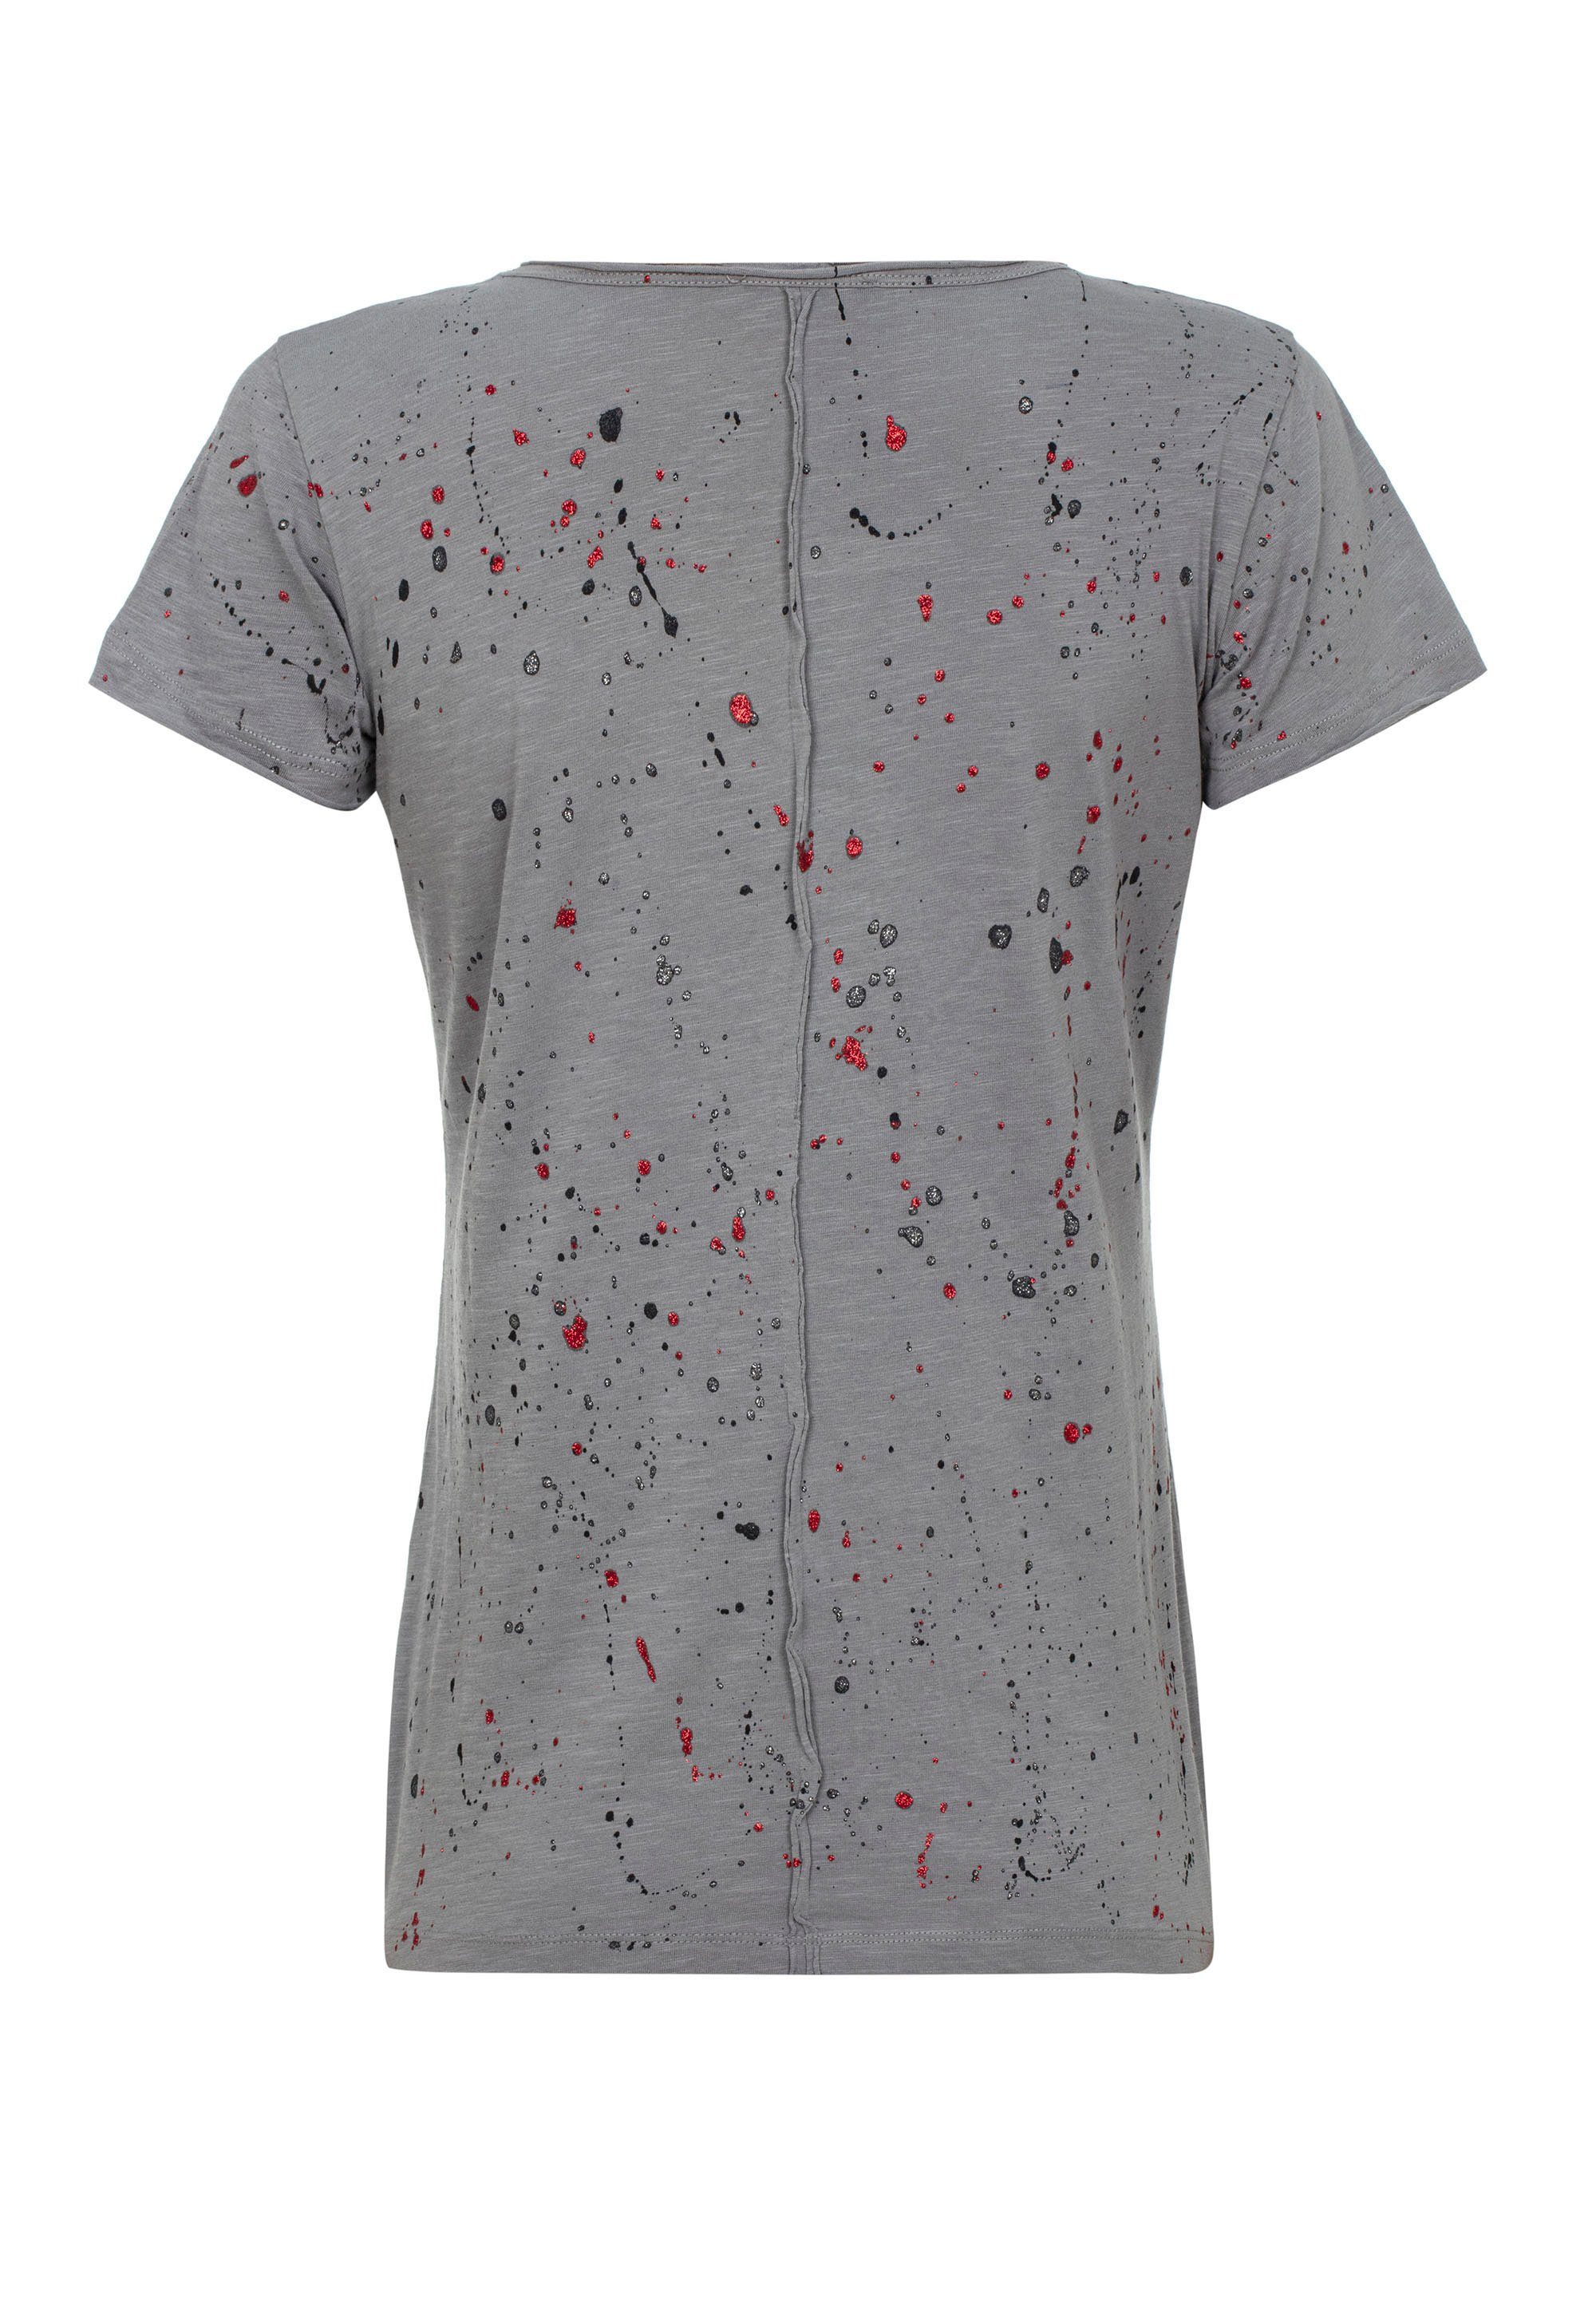 Baxx Glitzersteinchen T-Shirt Cipo mit grau & trendigen